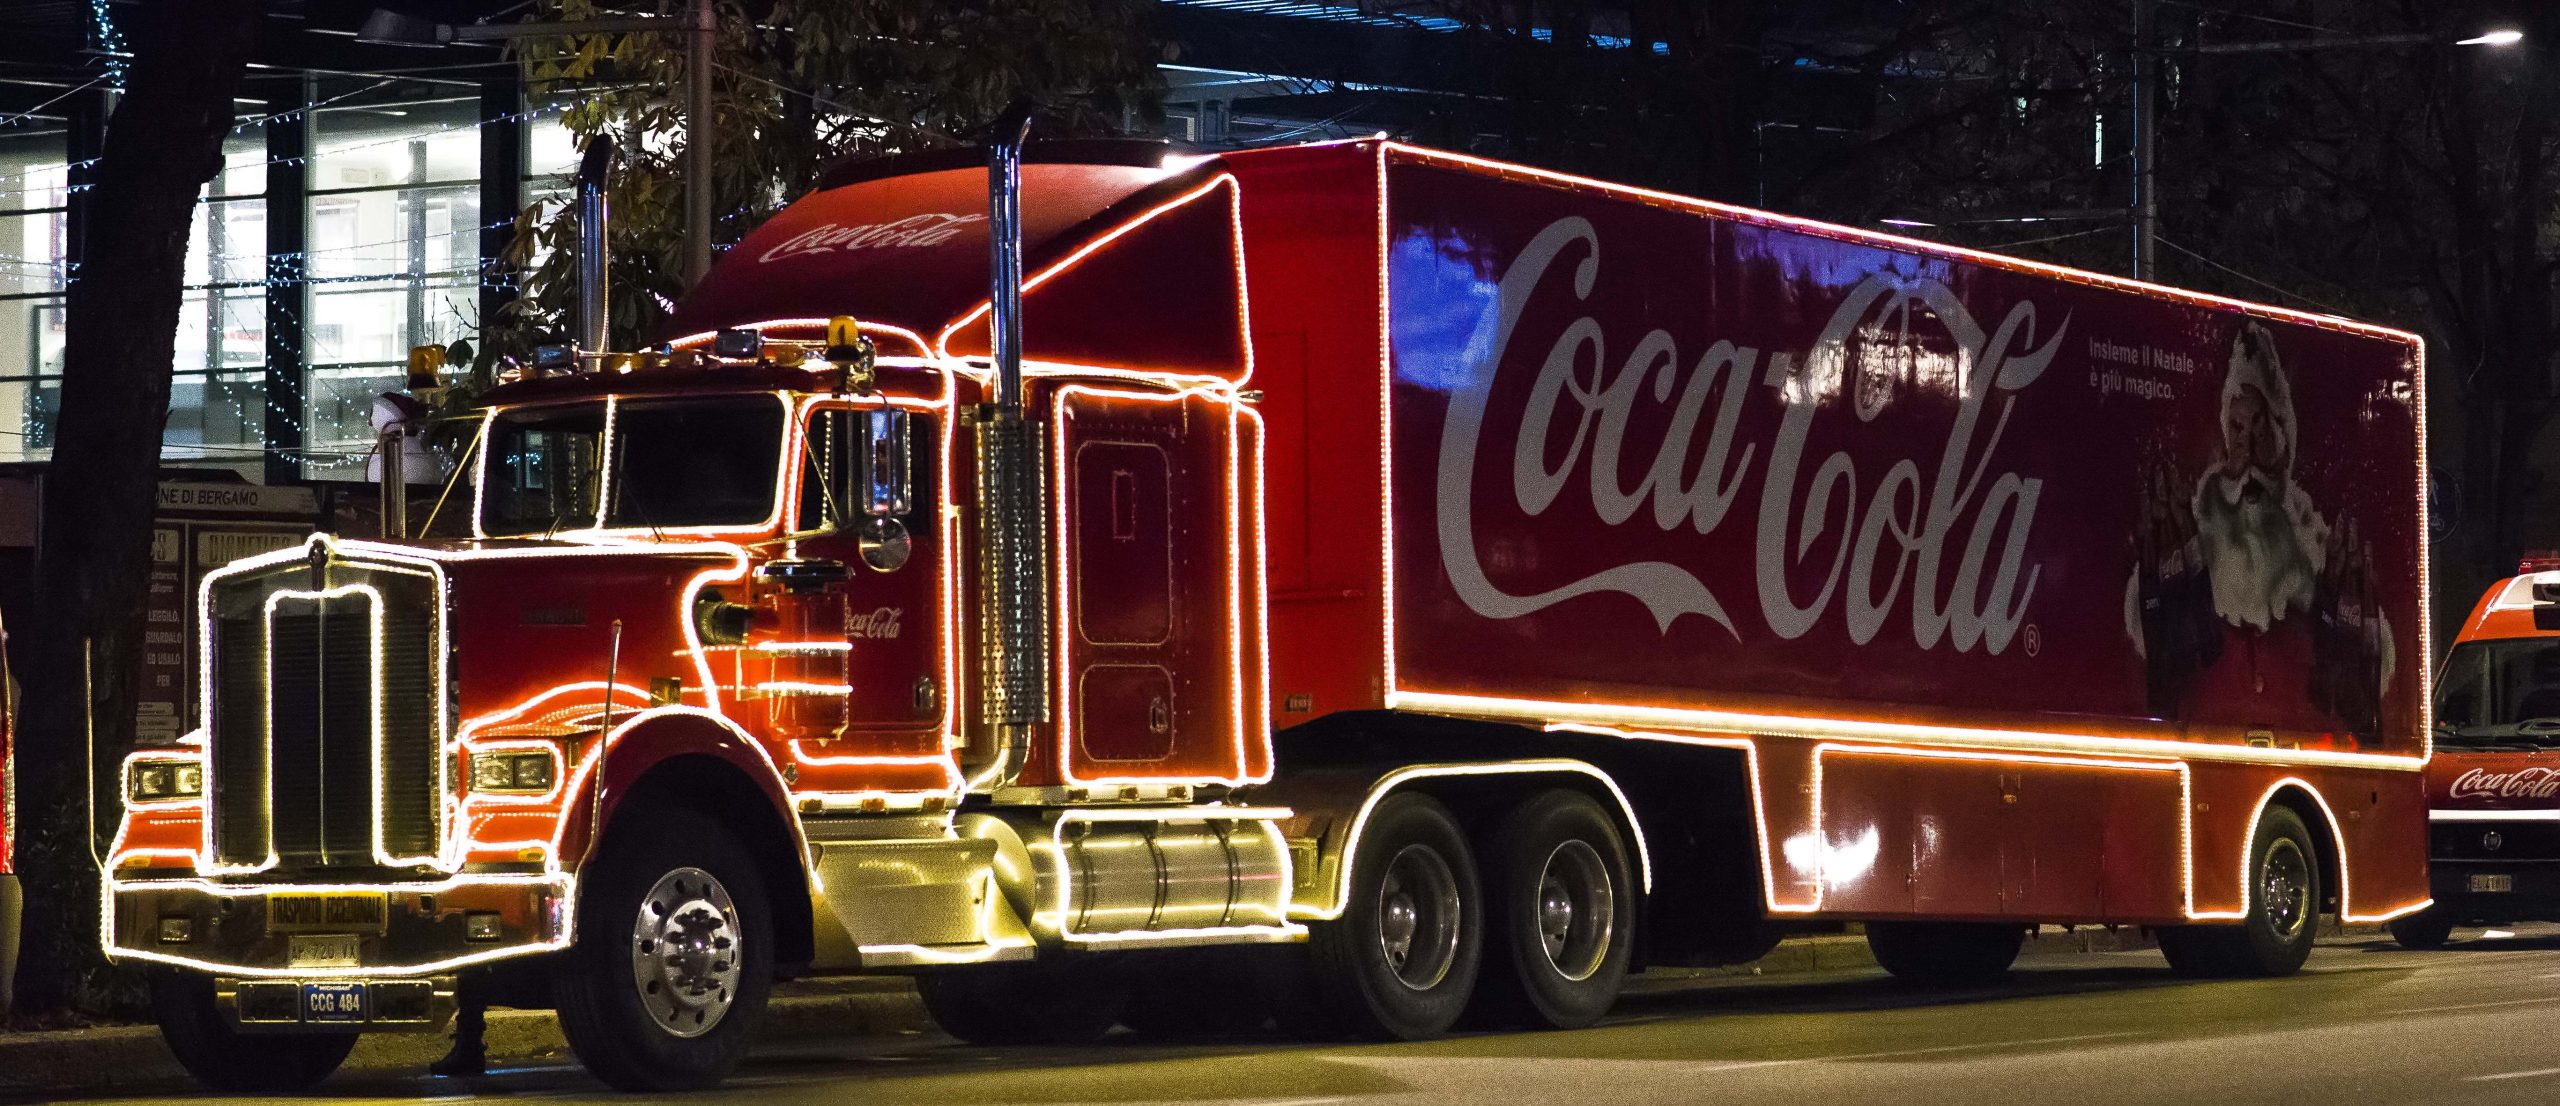 E' arrivato a Milano il camion Coca-Cola